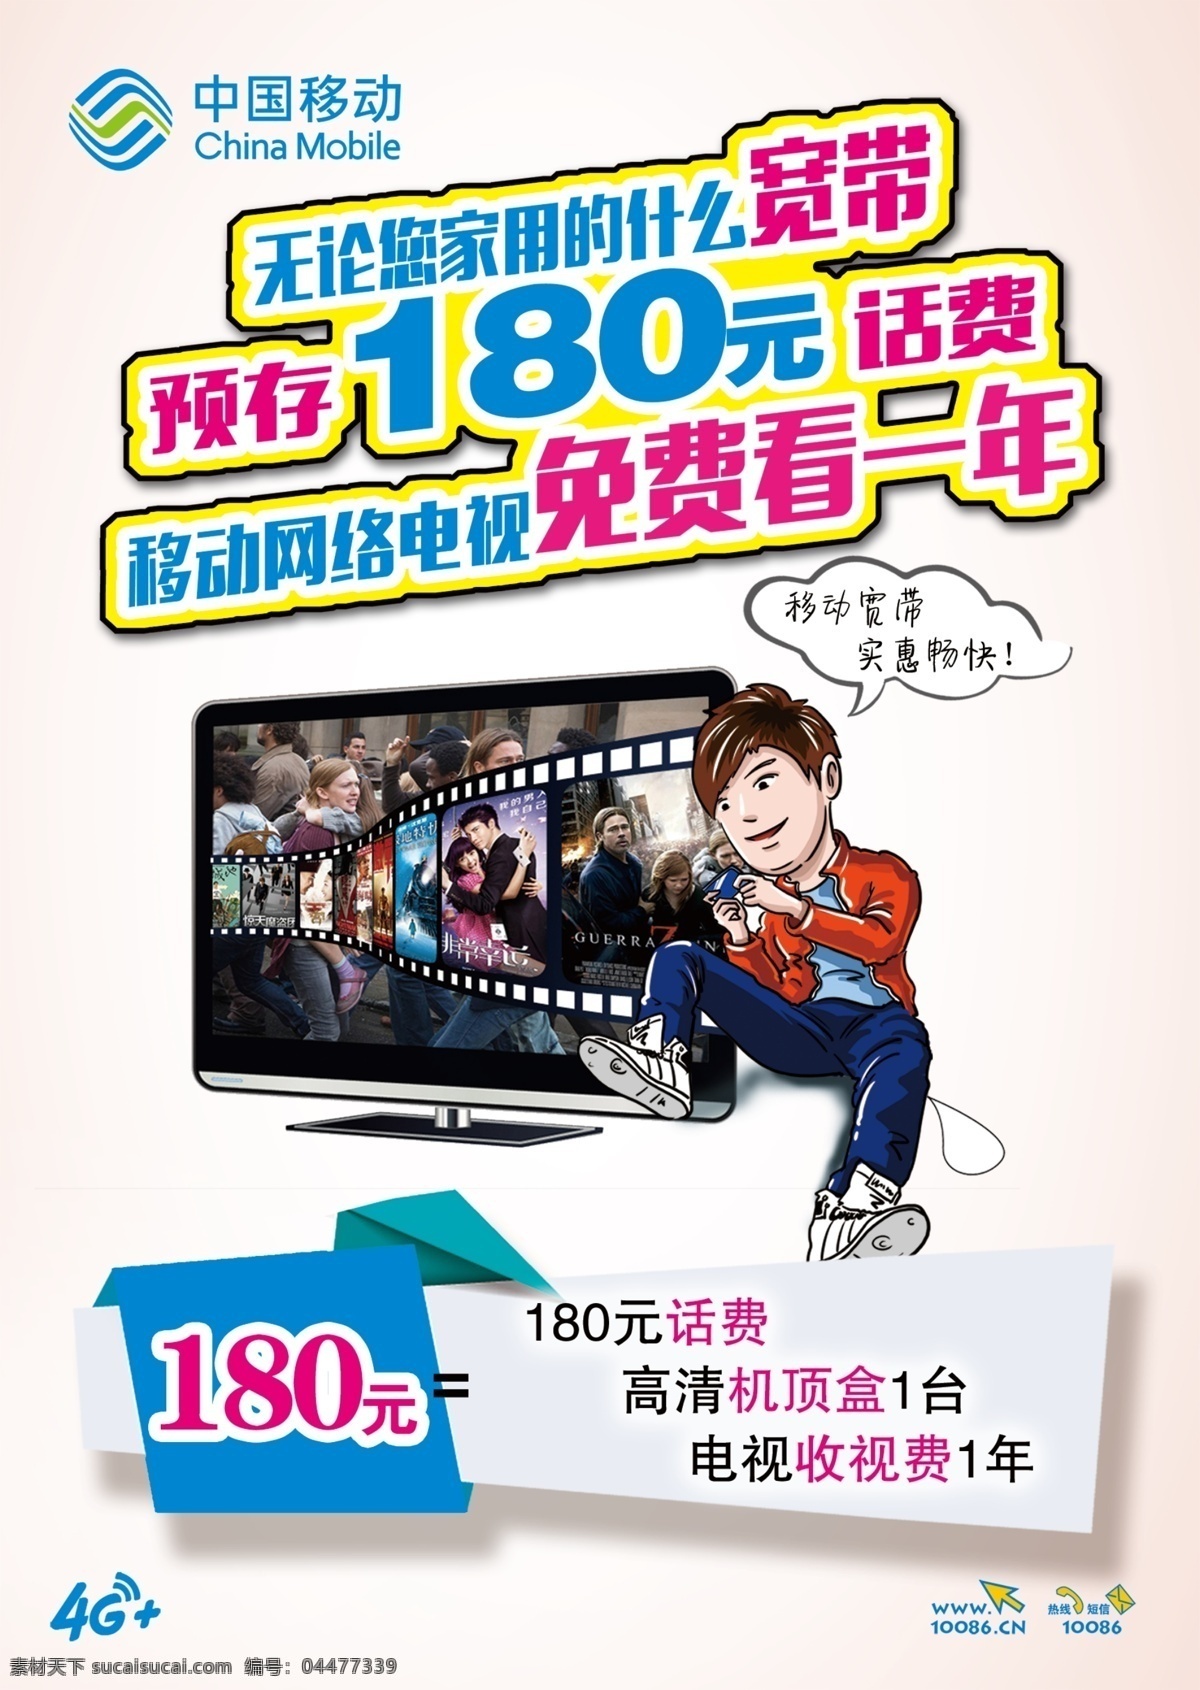 中国移动 网络电视 宣传 彩页 移动 网络 电视 宣传单 宽带 魔百和 分层